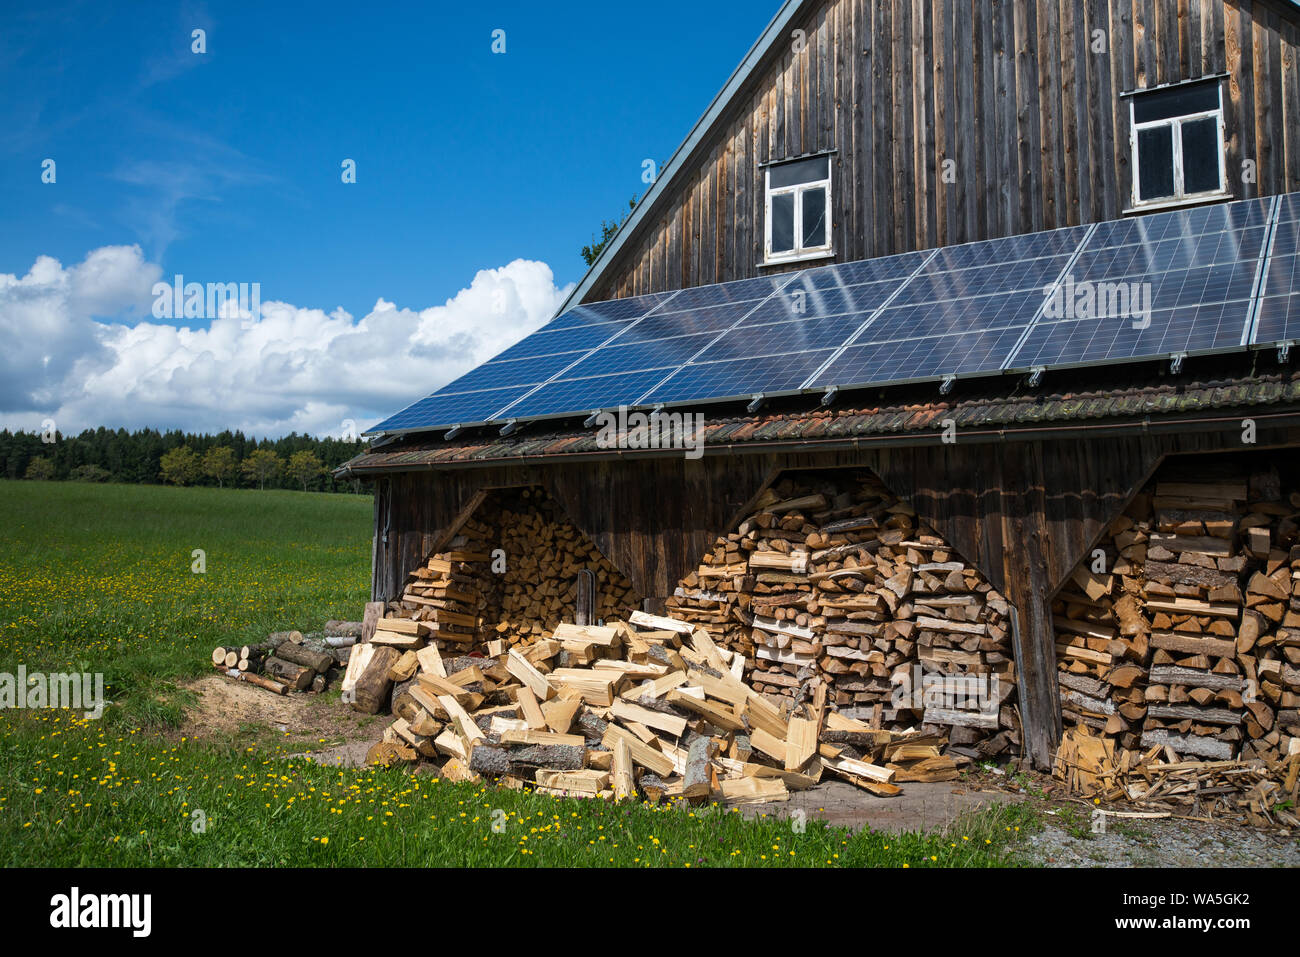 Pannelli fotovoltaici e legna da ardere pila in corrispondenza di un fienile in zona rurale Foto Stock